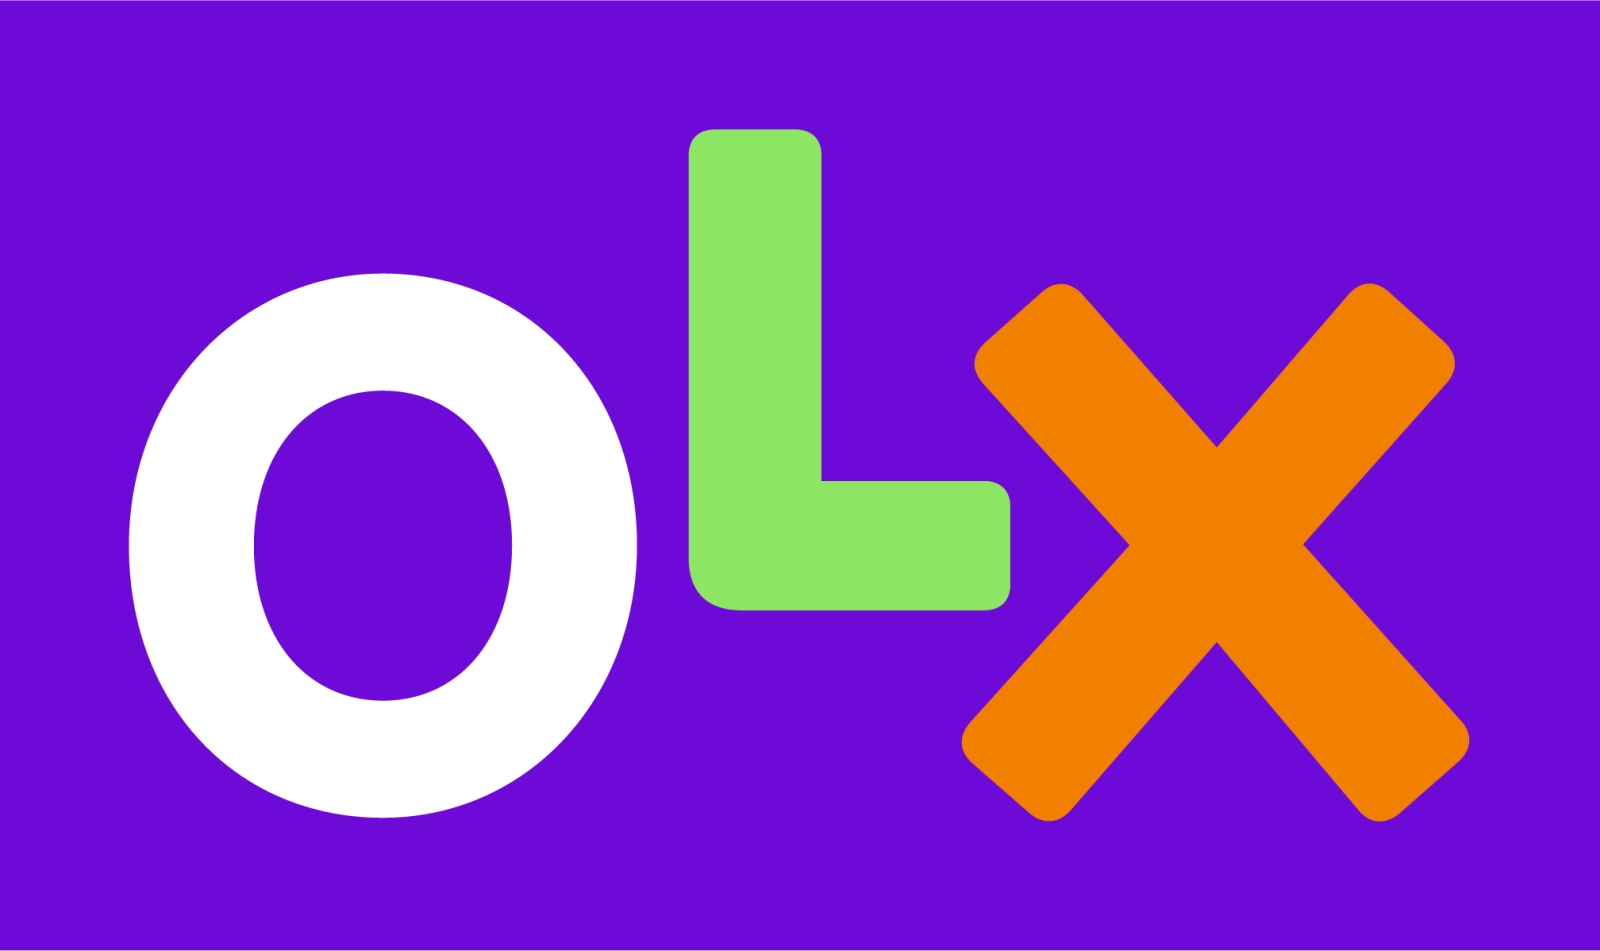 OLX tillkännager gratis frakt för beställningar under hela december månad